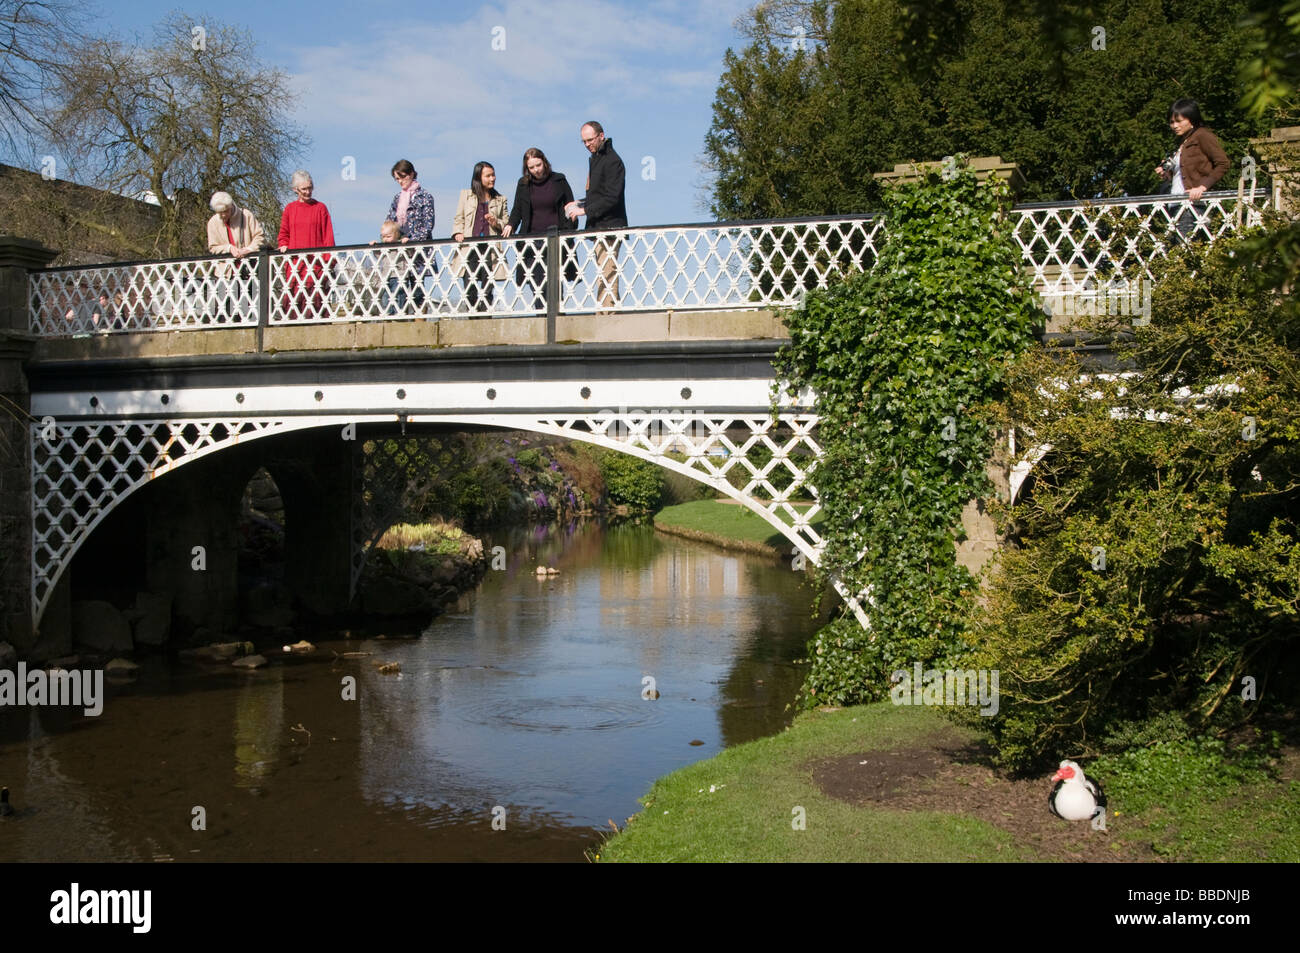 Les gens se tenait sur le pont dans le Pavilion gardens dans la ville thermale de Buxton, dans le Derbyshire Peak District England UK Banque D'Images